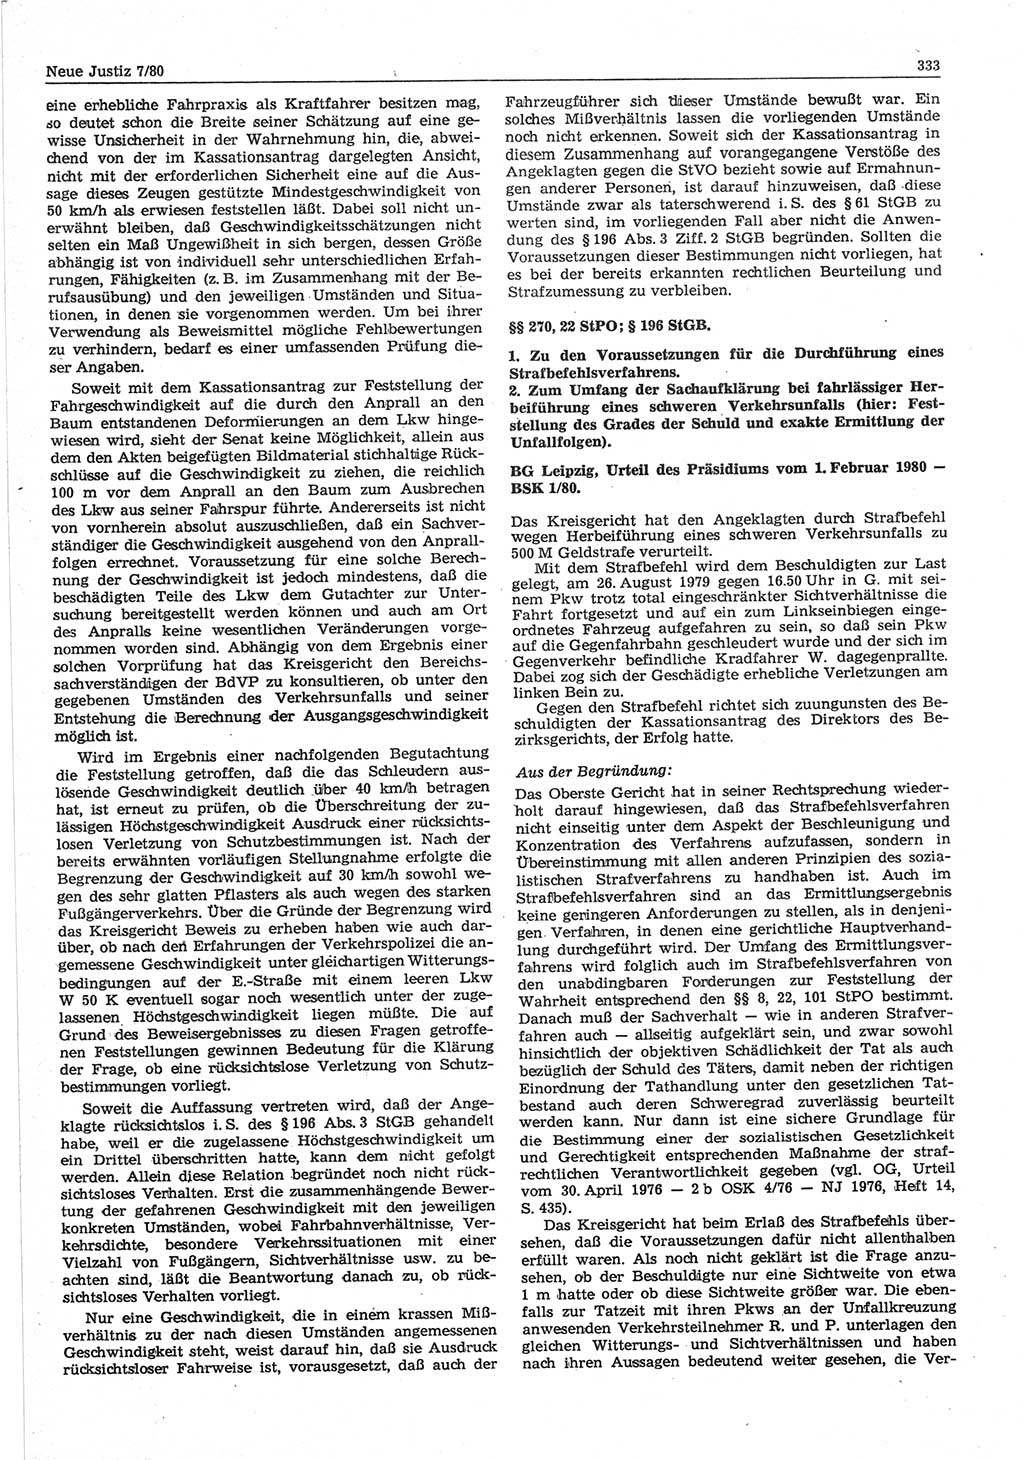 Neue Justiz (NJ), Zeitschrift für sozialistisches Recht und Gesetzlichkeit [Deutsche Demokratische Republik (DDR)], 34. Jahrgang 1980, Seite 333 (NJ DDR 1980, S. 333)